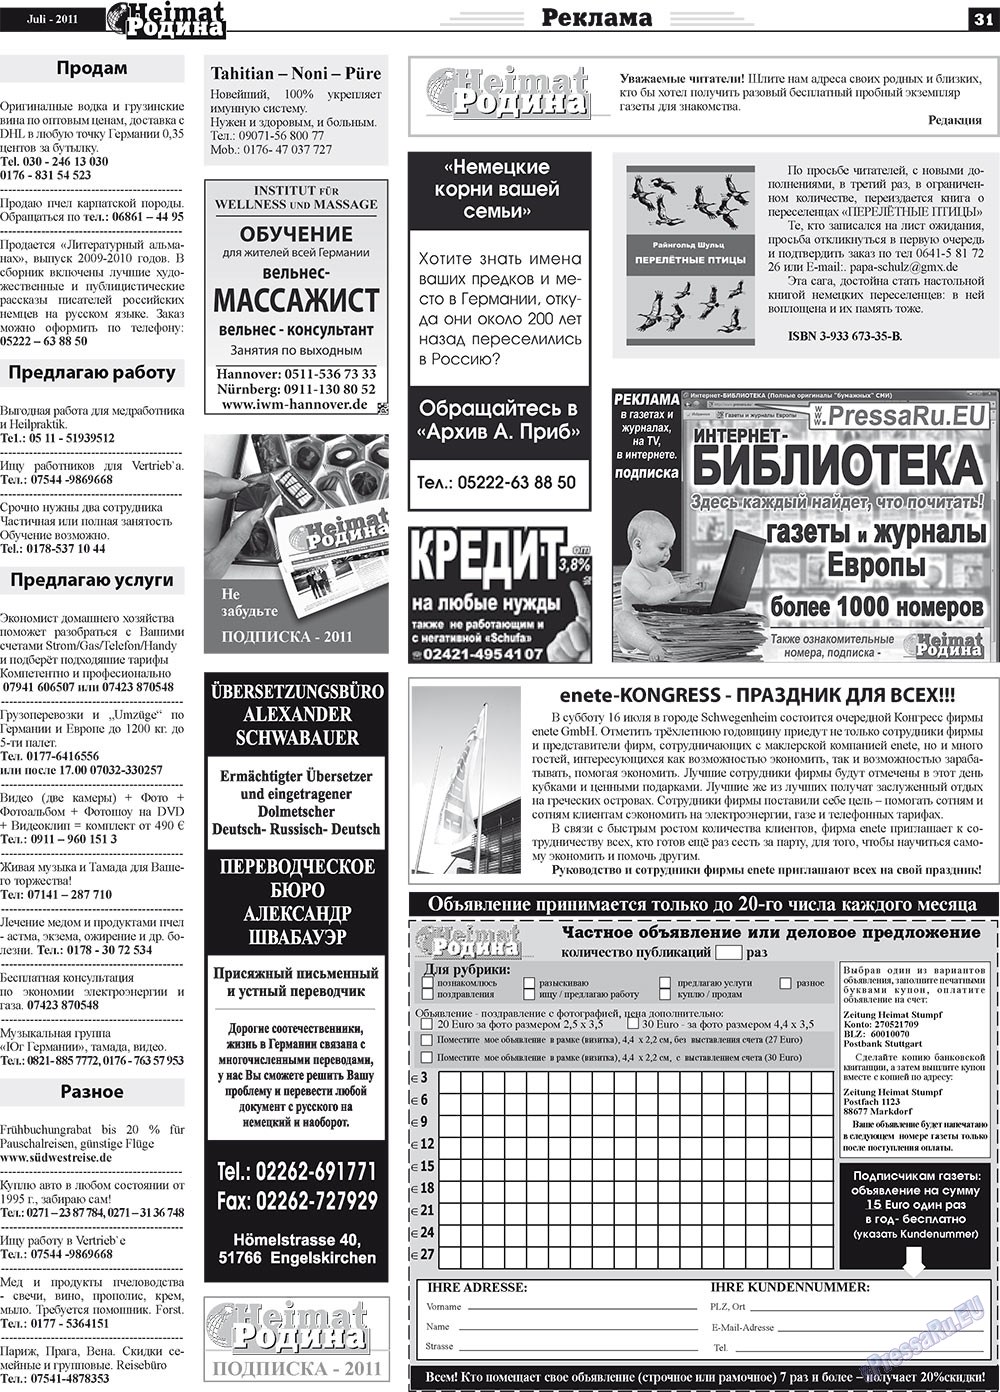 Heimat-Родина (газета). 2011 год, номер 7, стр. 31